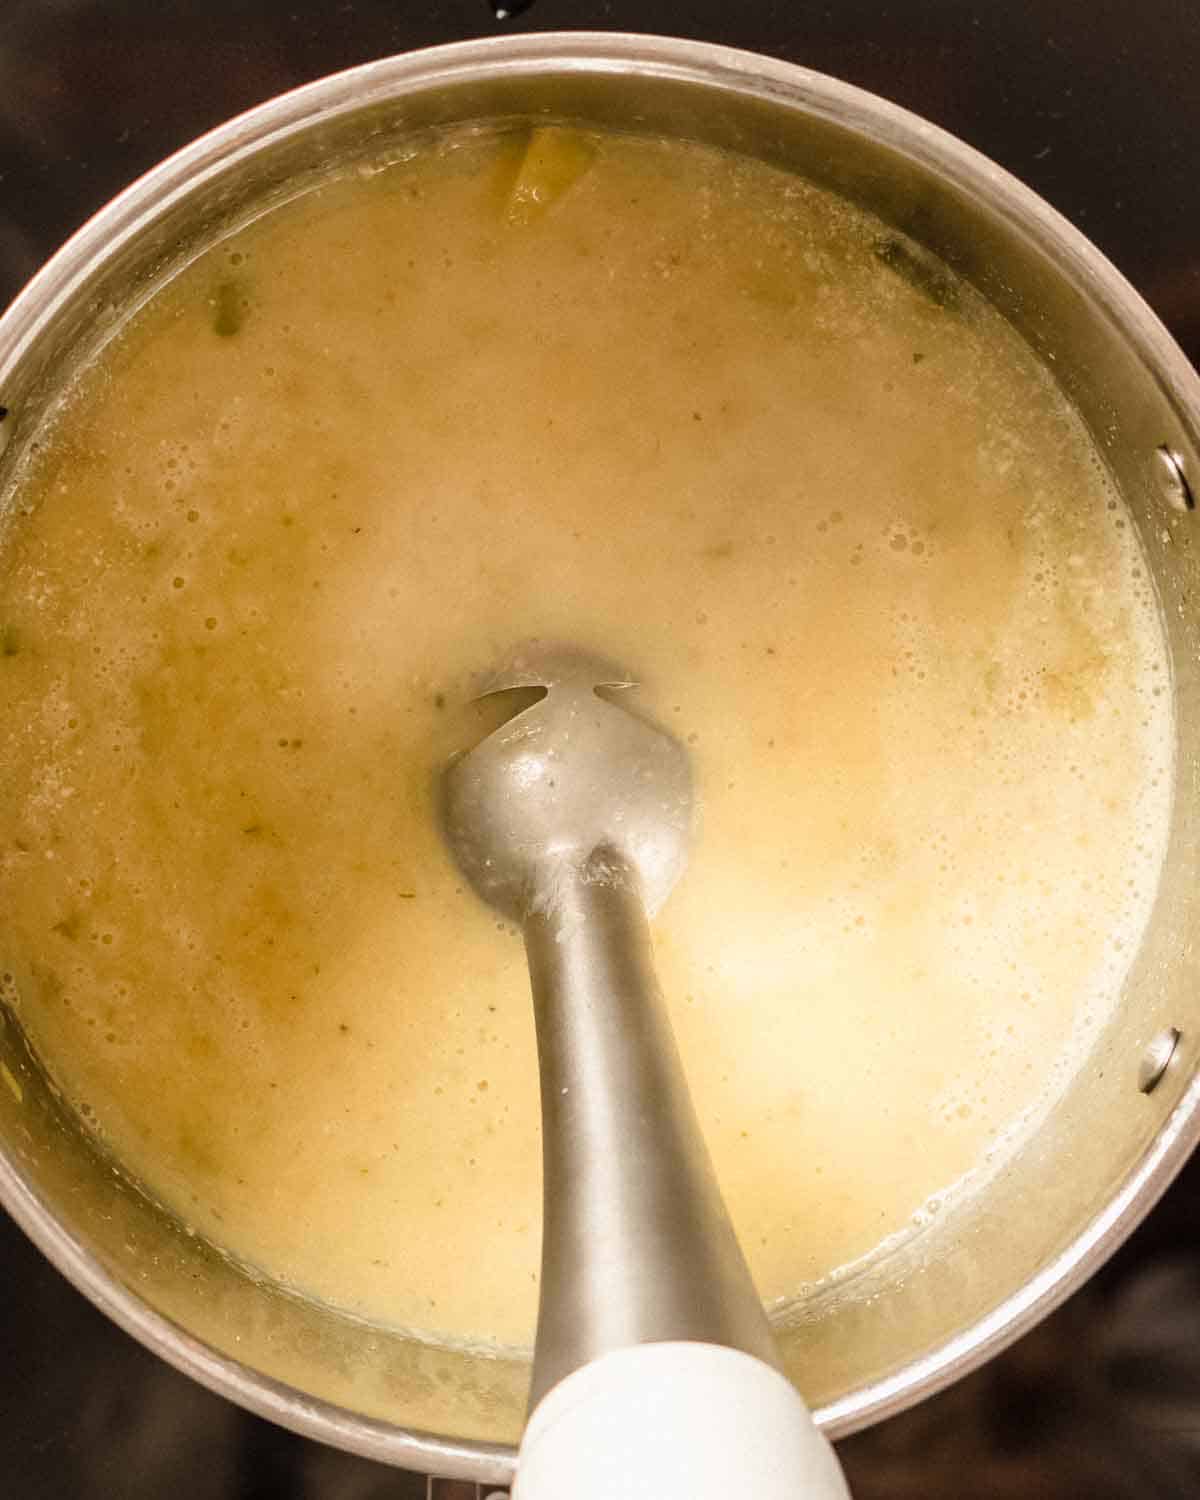 stick blender blending potato soup in a soup pot.